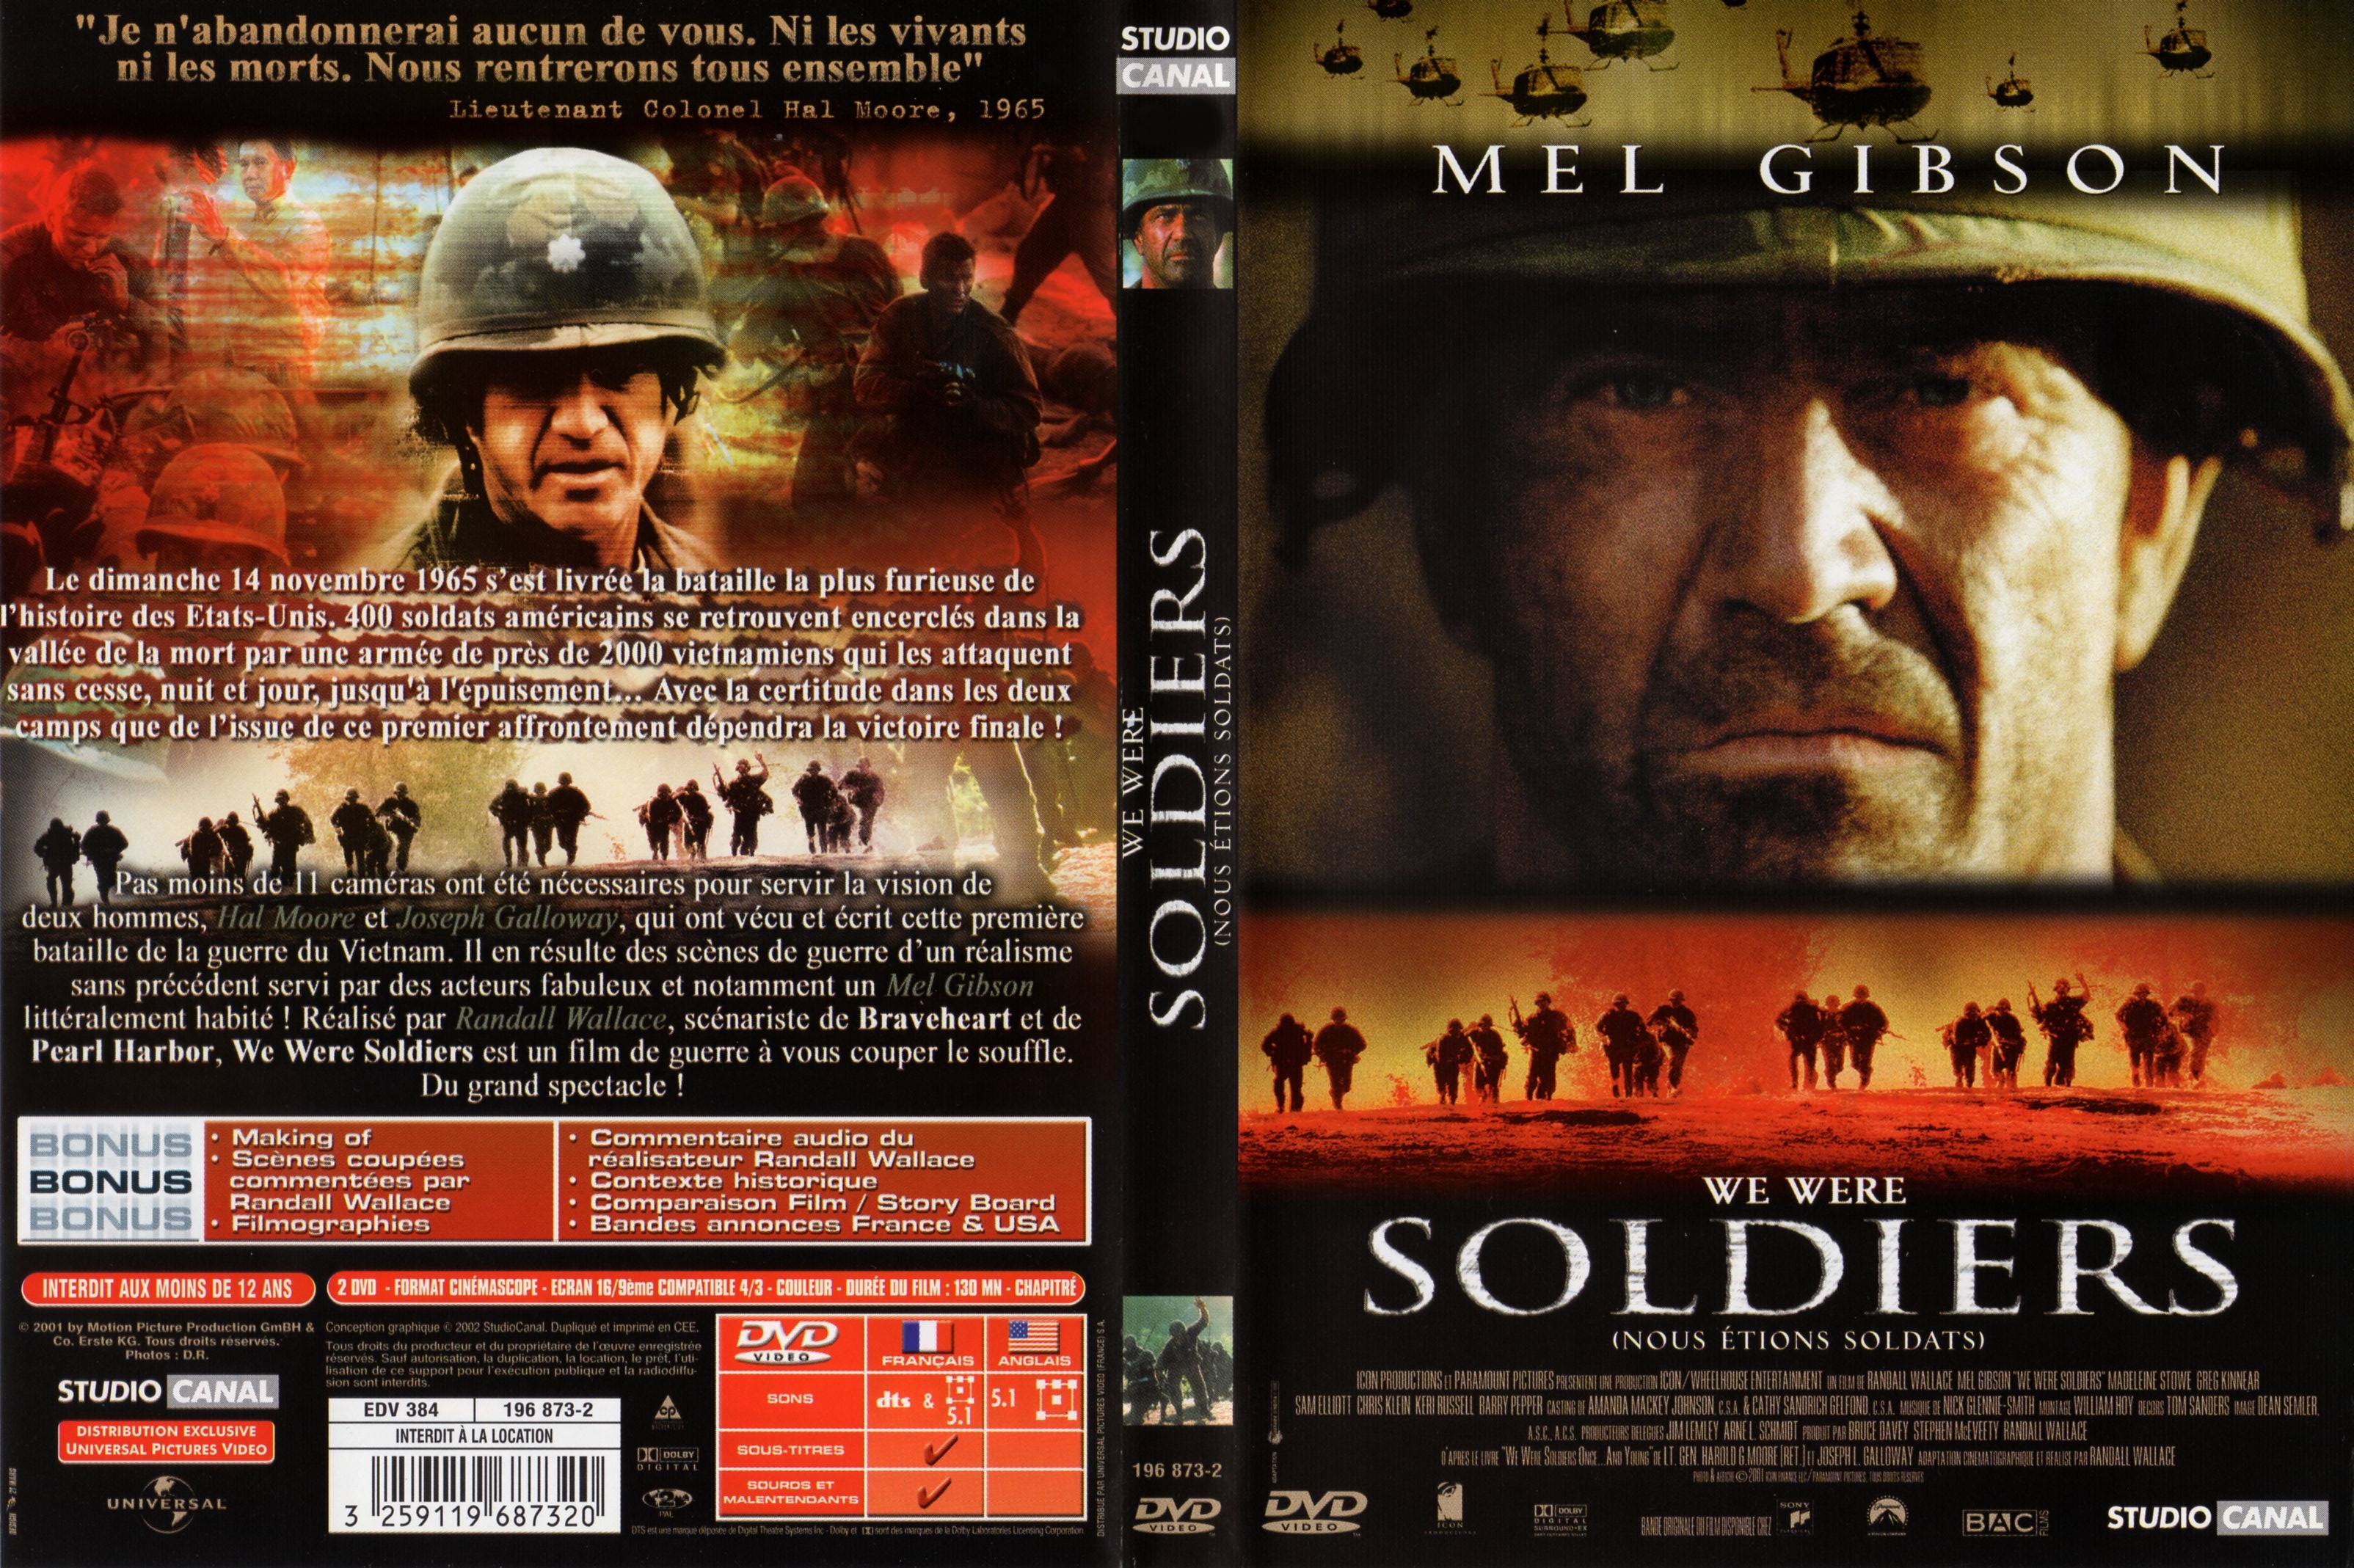 Jaquette DVD We were soldiers - nous tions soldats v2